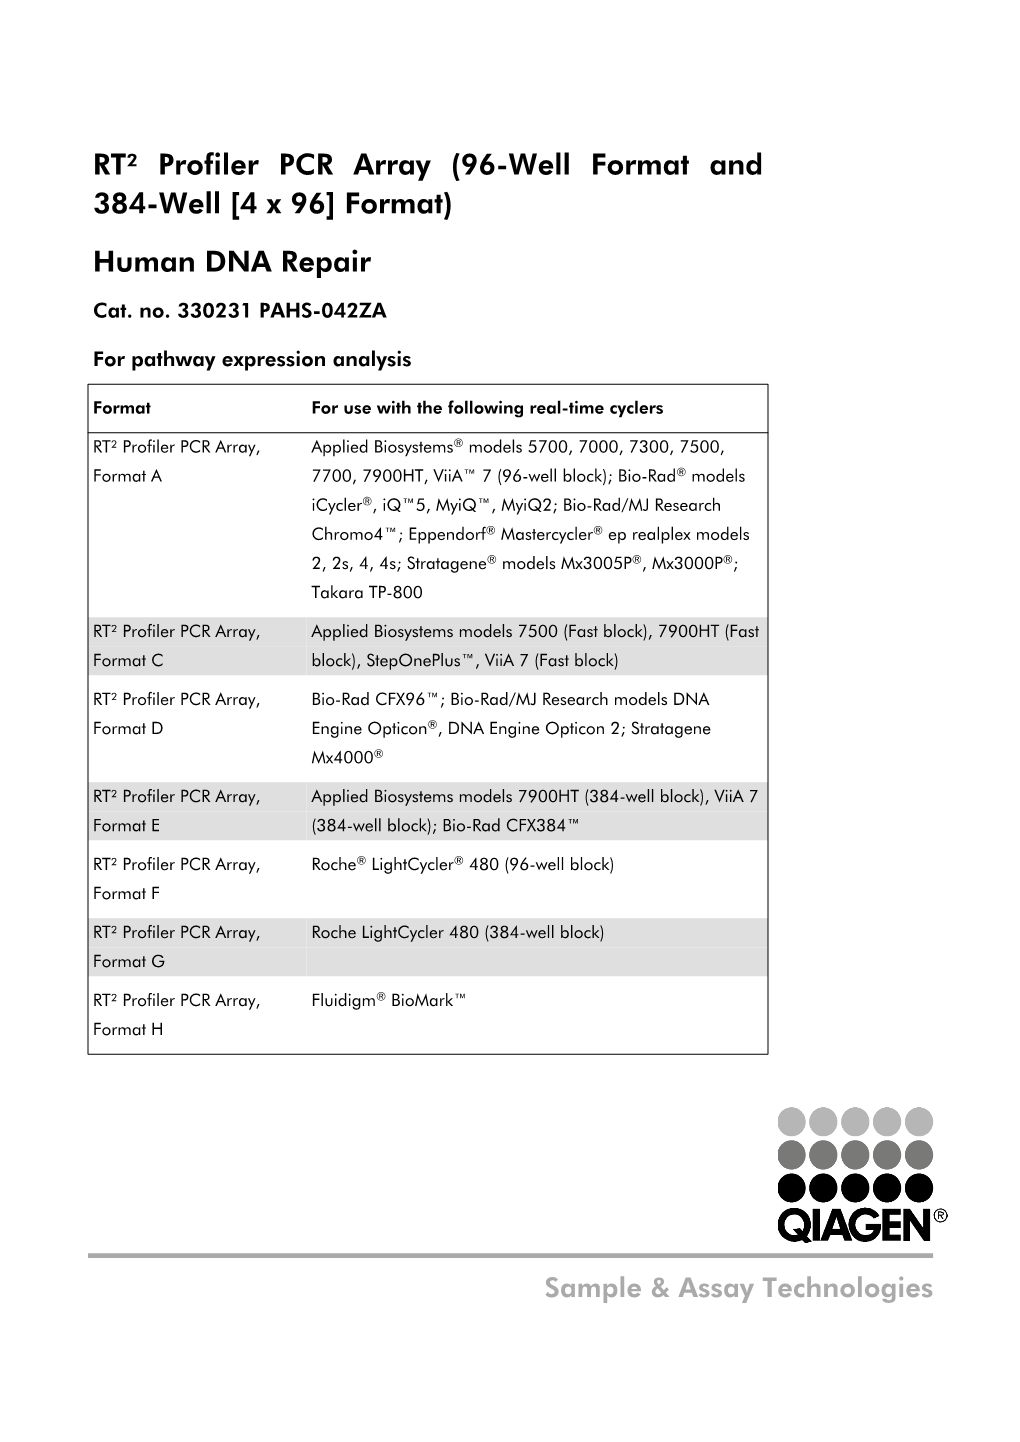 Human DNA Repair